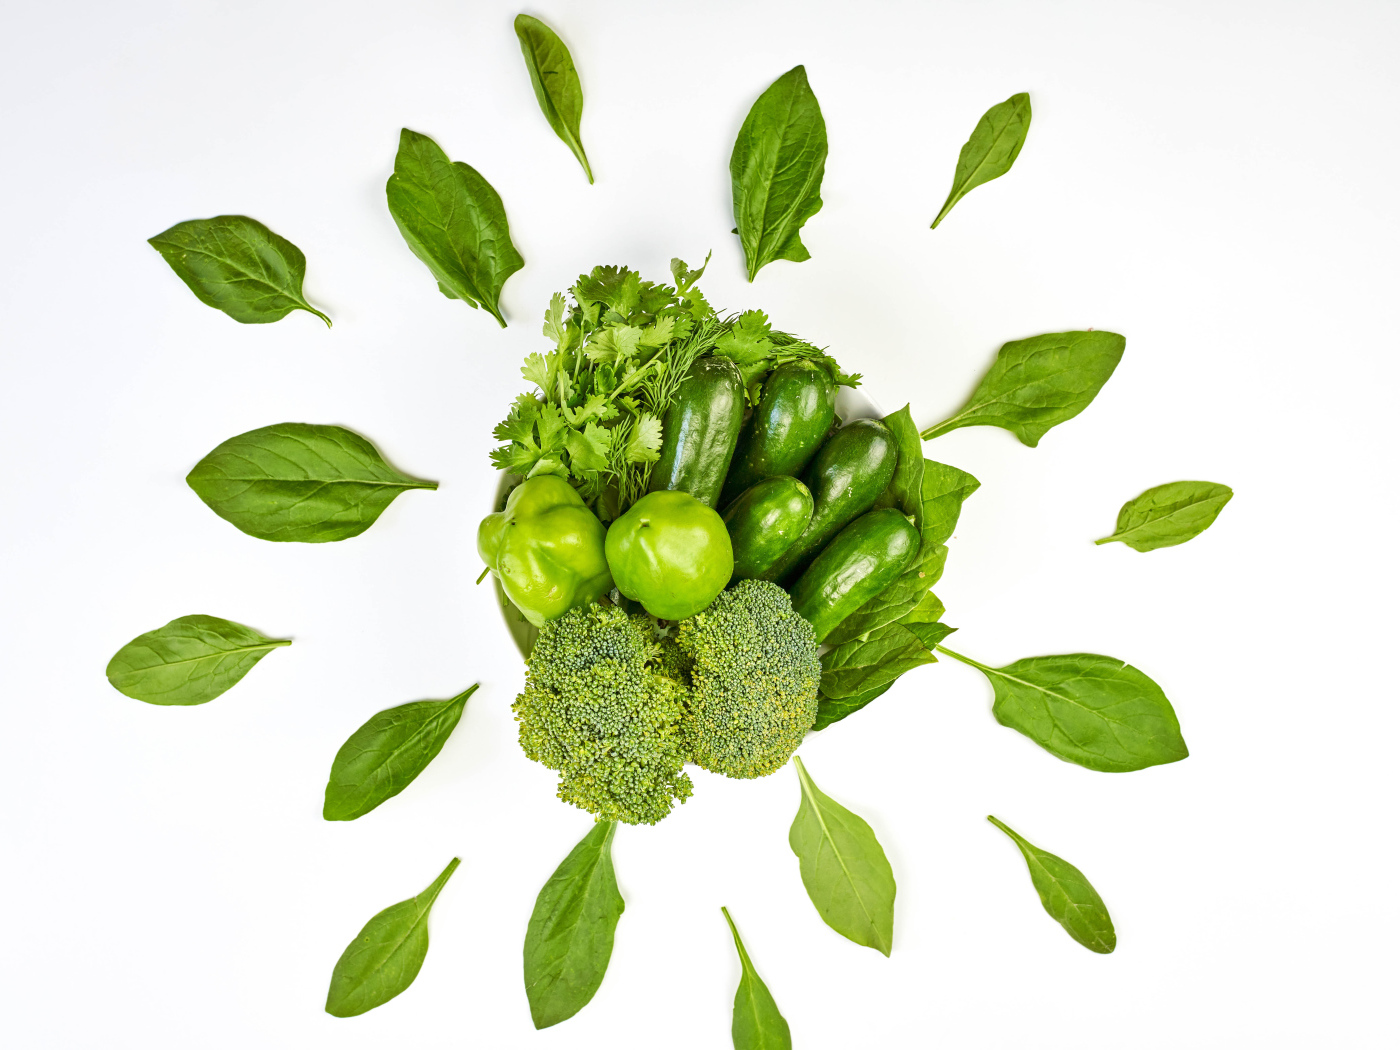 Зеленый набор овощей вегетарианца на белом фоне